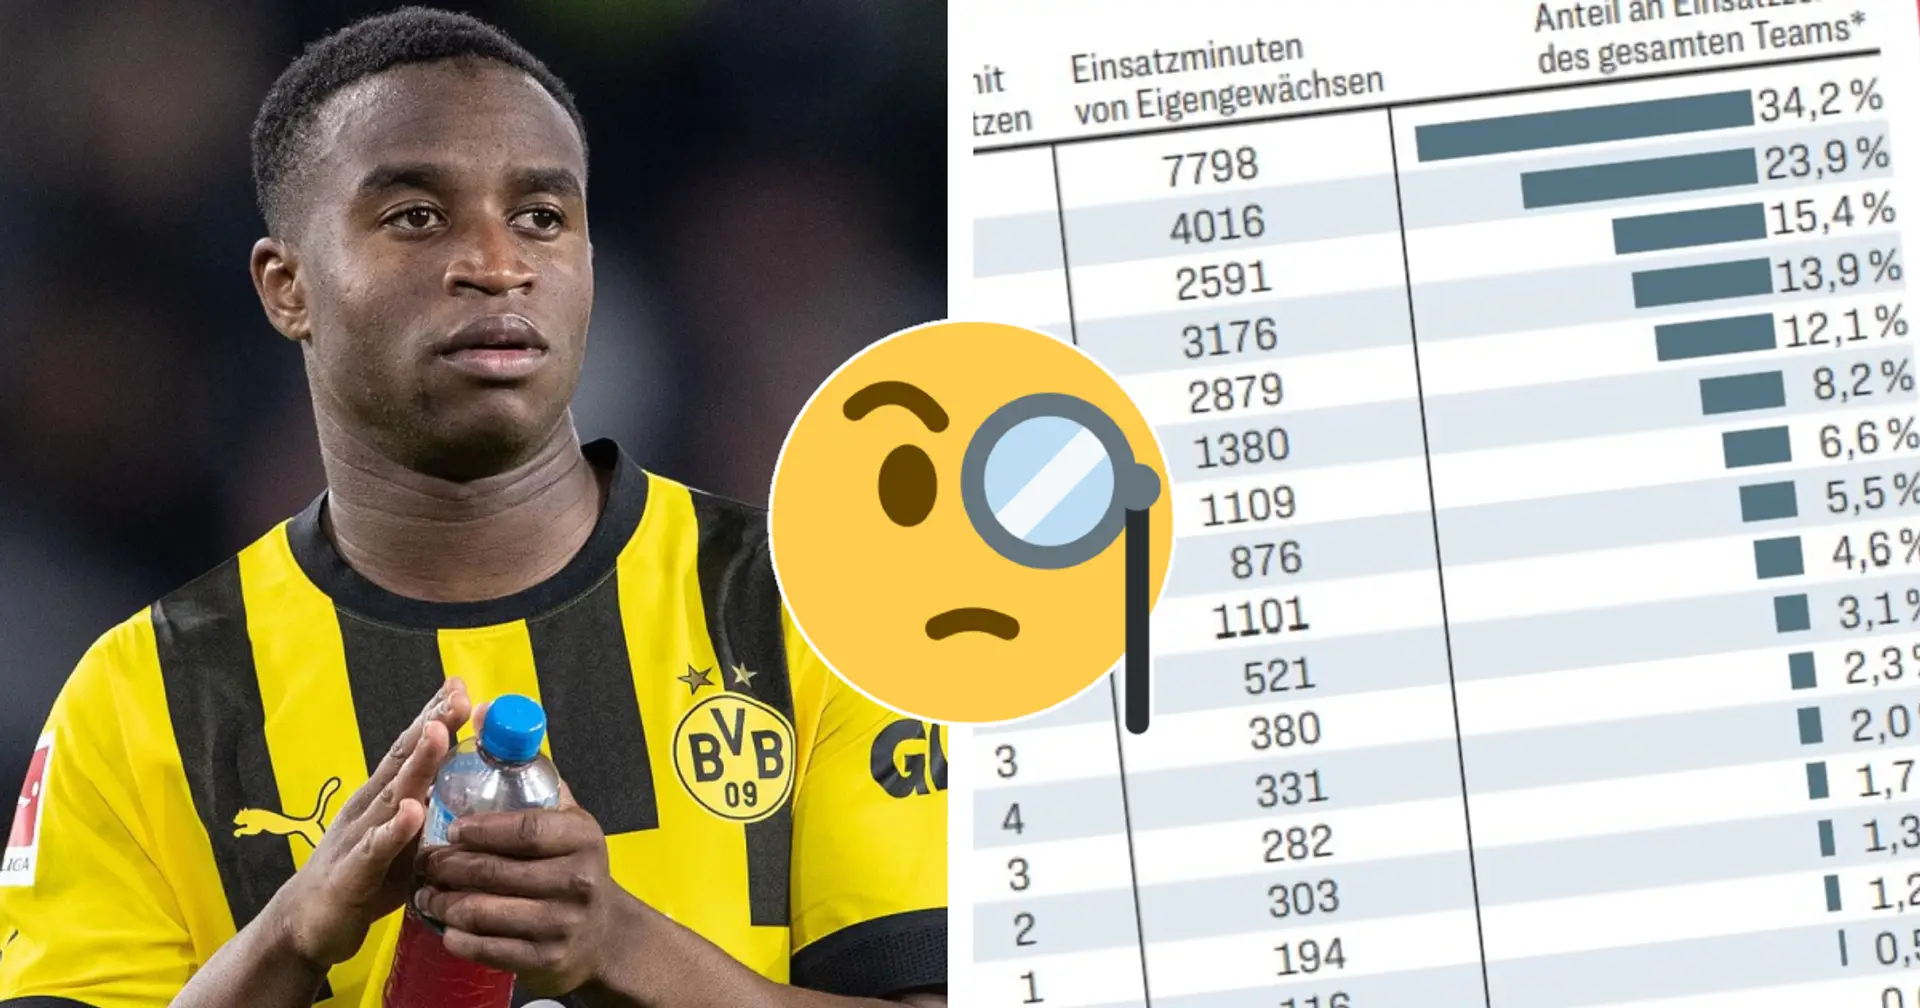 BuLi-Klubs mit größtem Anteil der Eigengewächse an Einsatzzeit des Teams - wo steht der BVB?